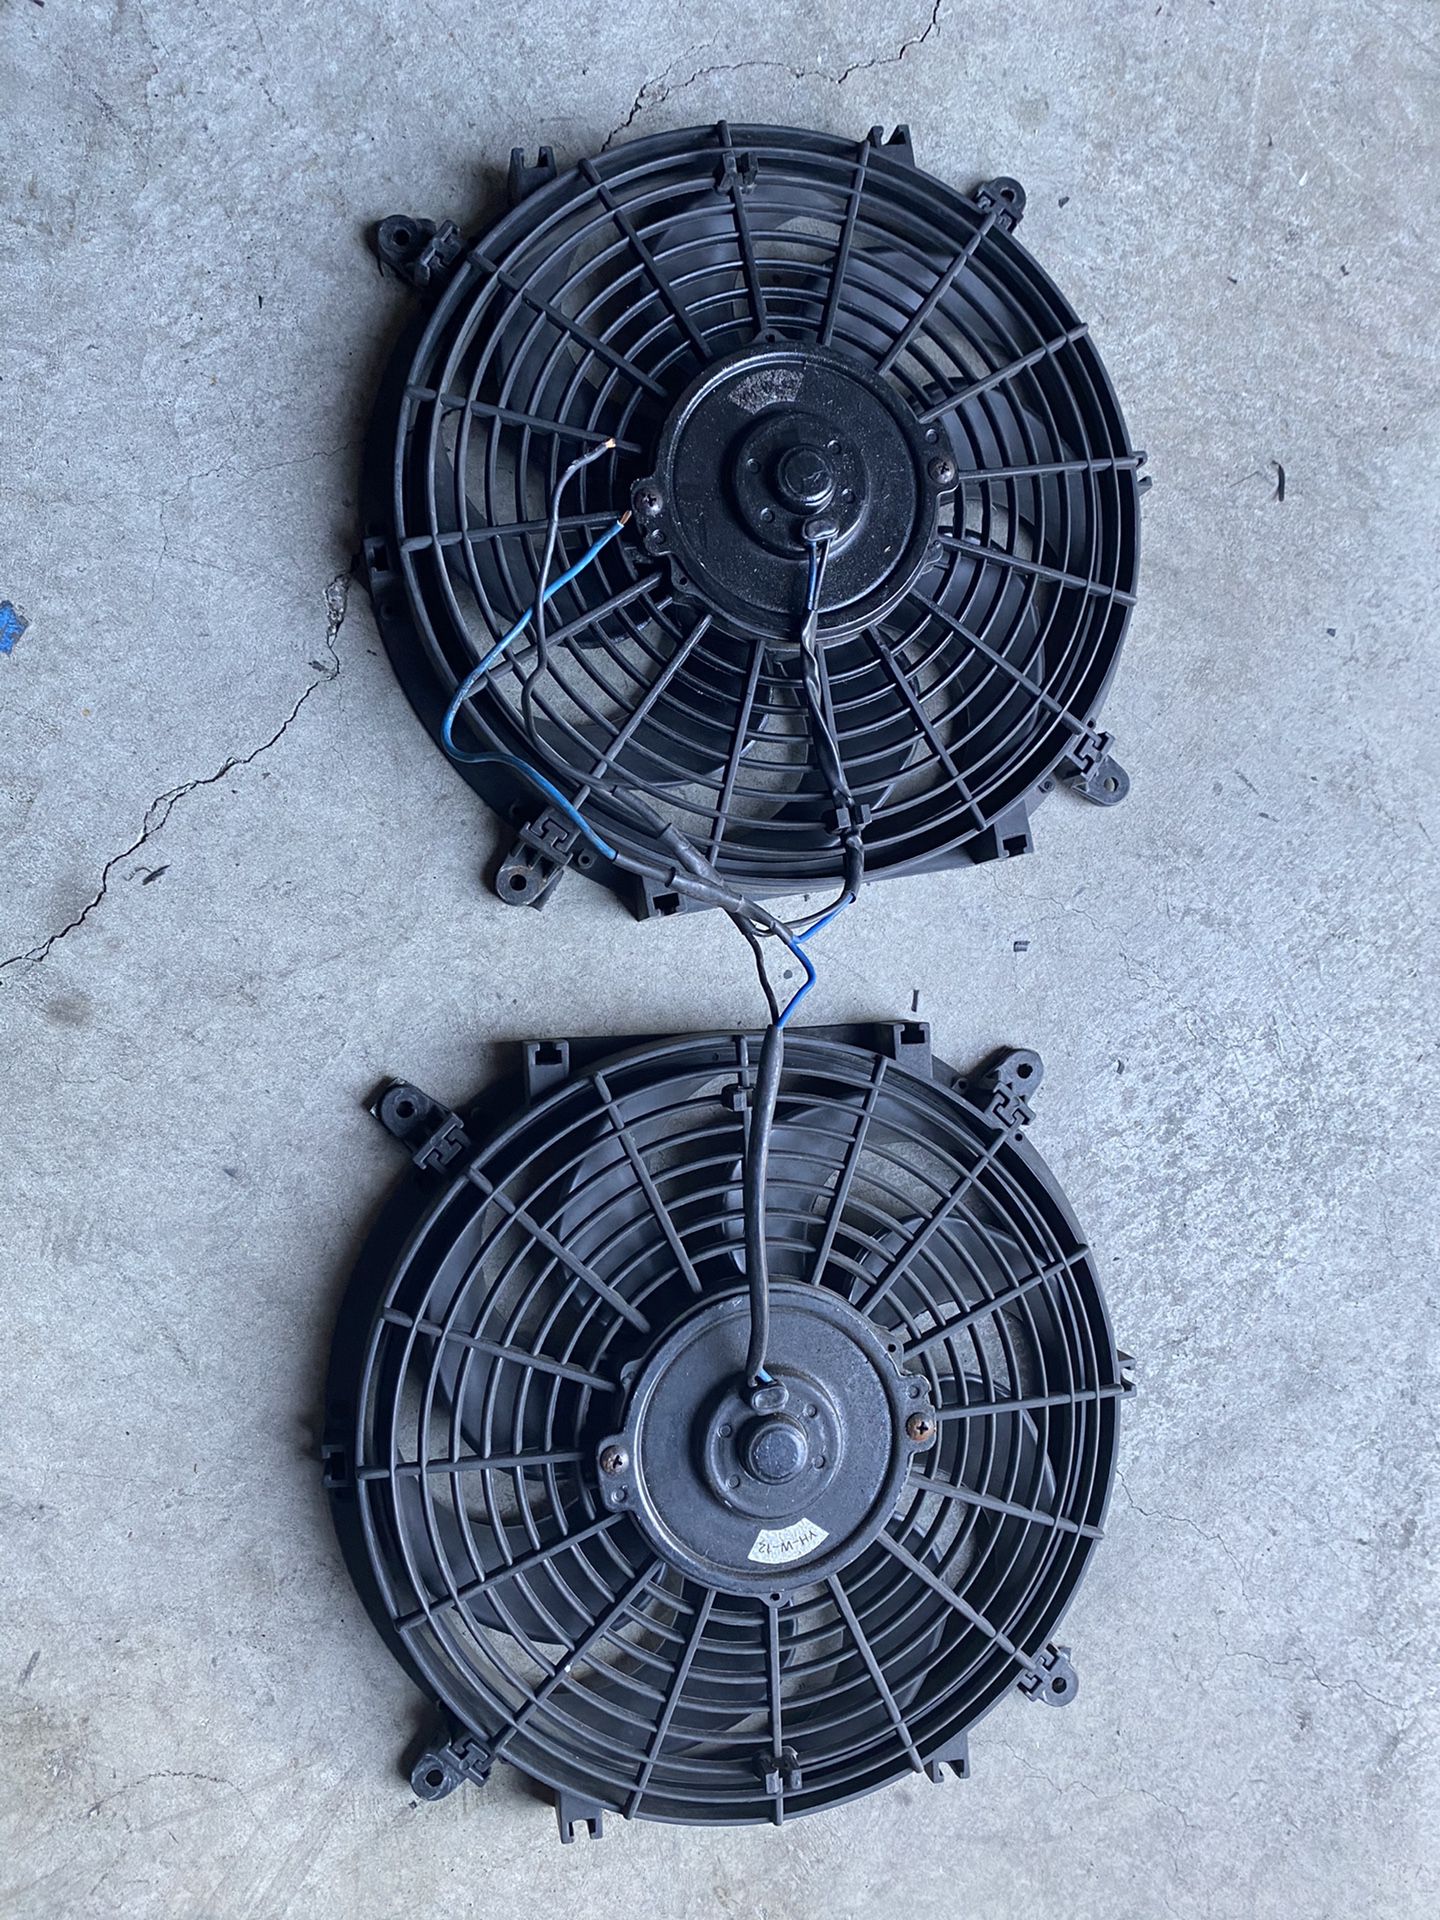 Dual 12v slim fans